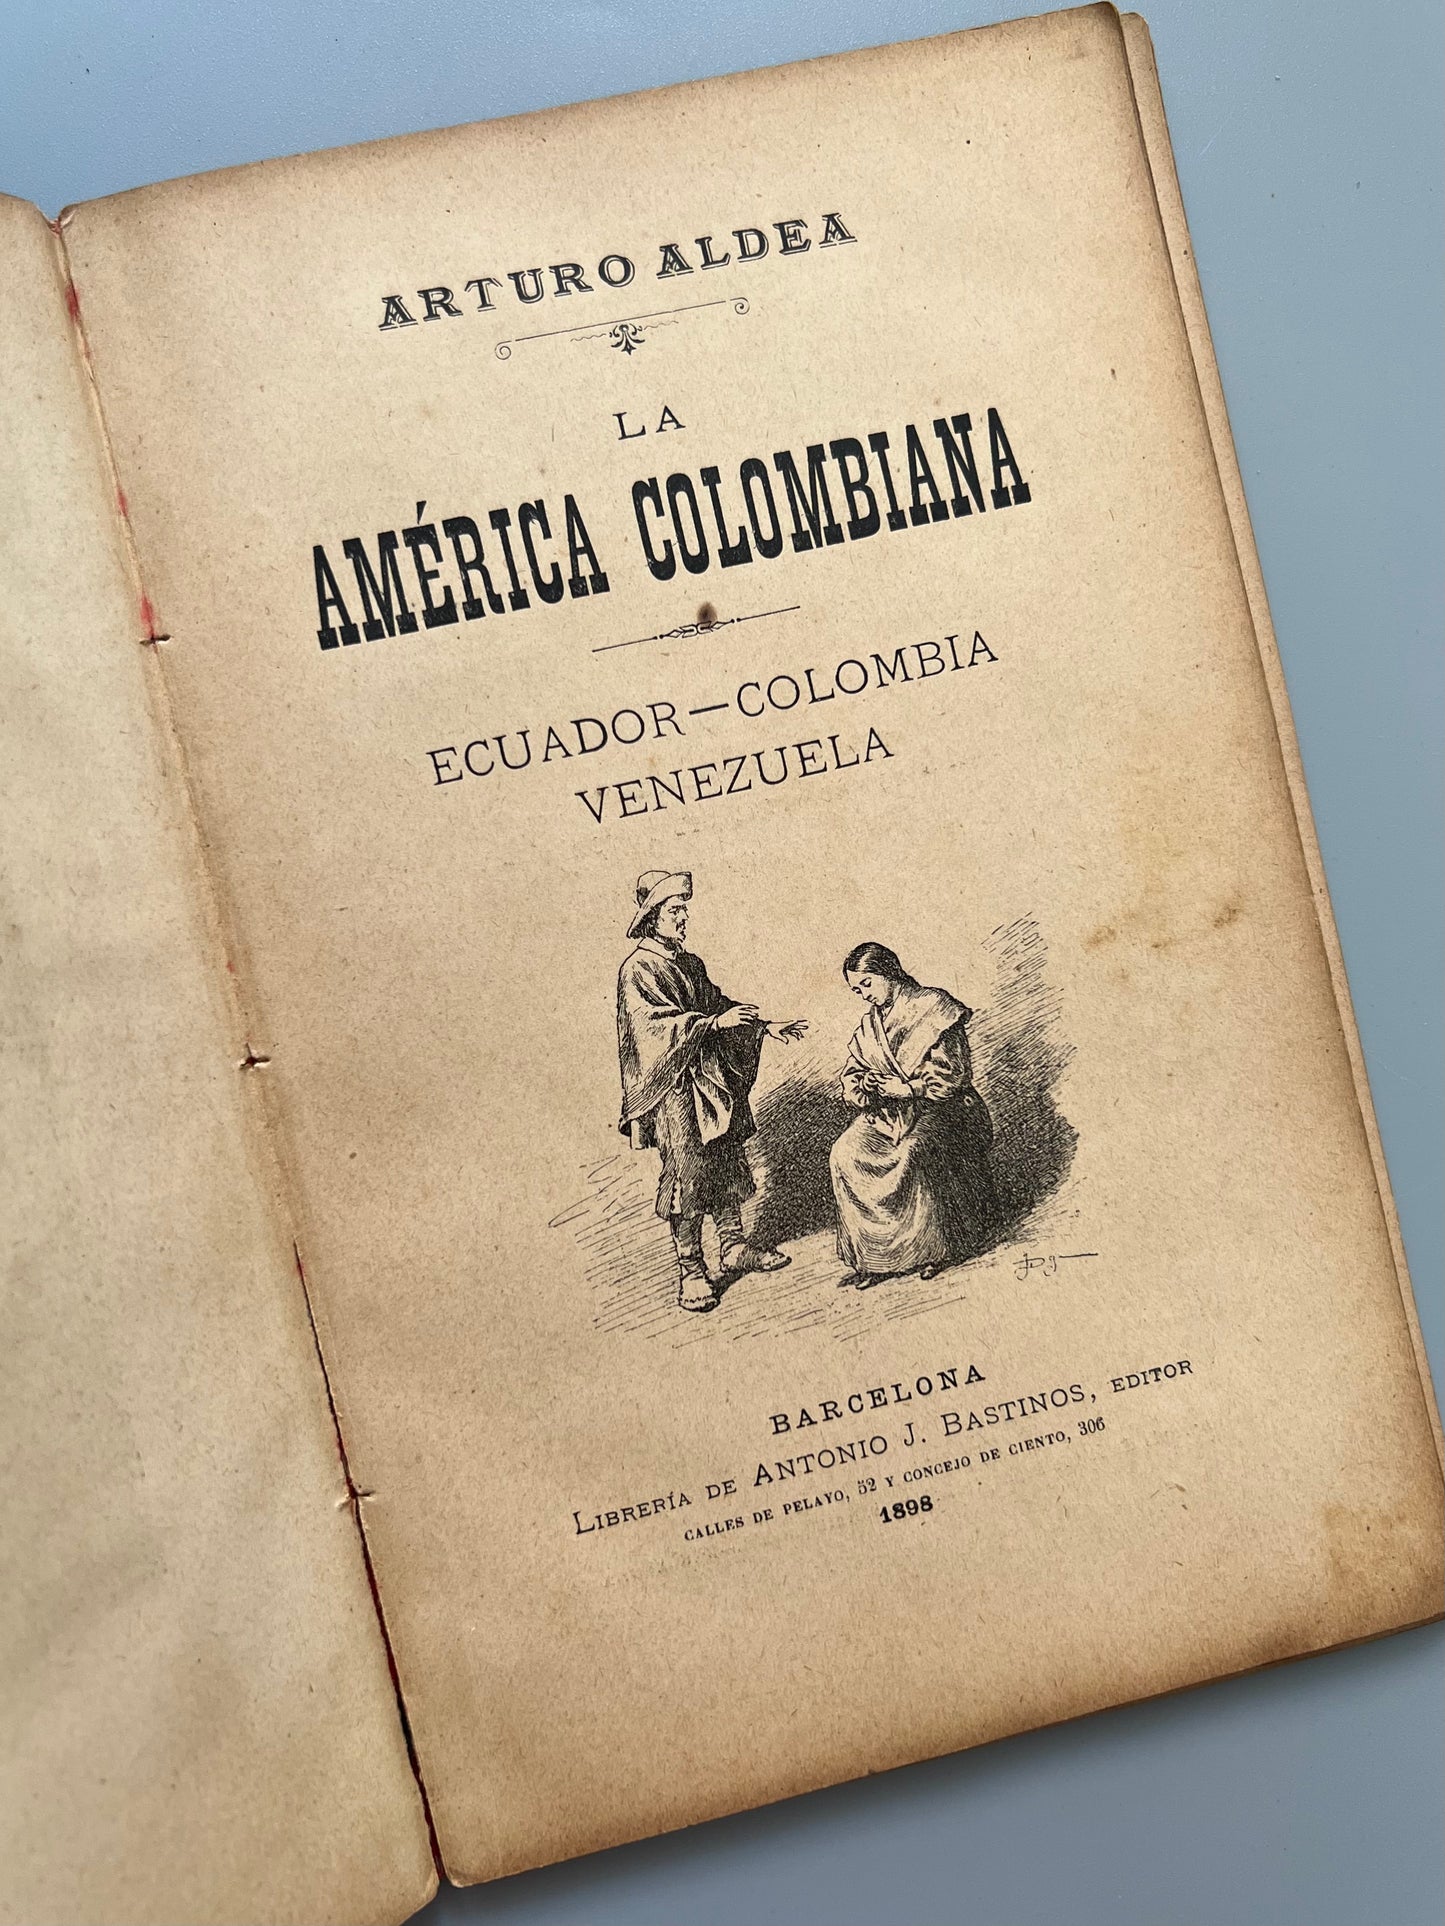 La América colombiana, Arturo Aldea - Librería de Antonio J. Bastinos, 1898